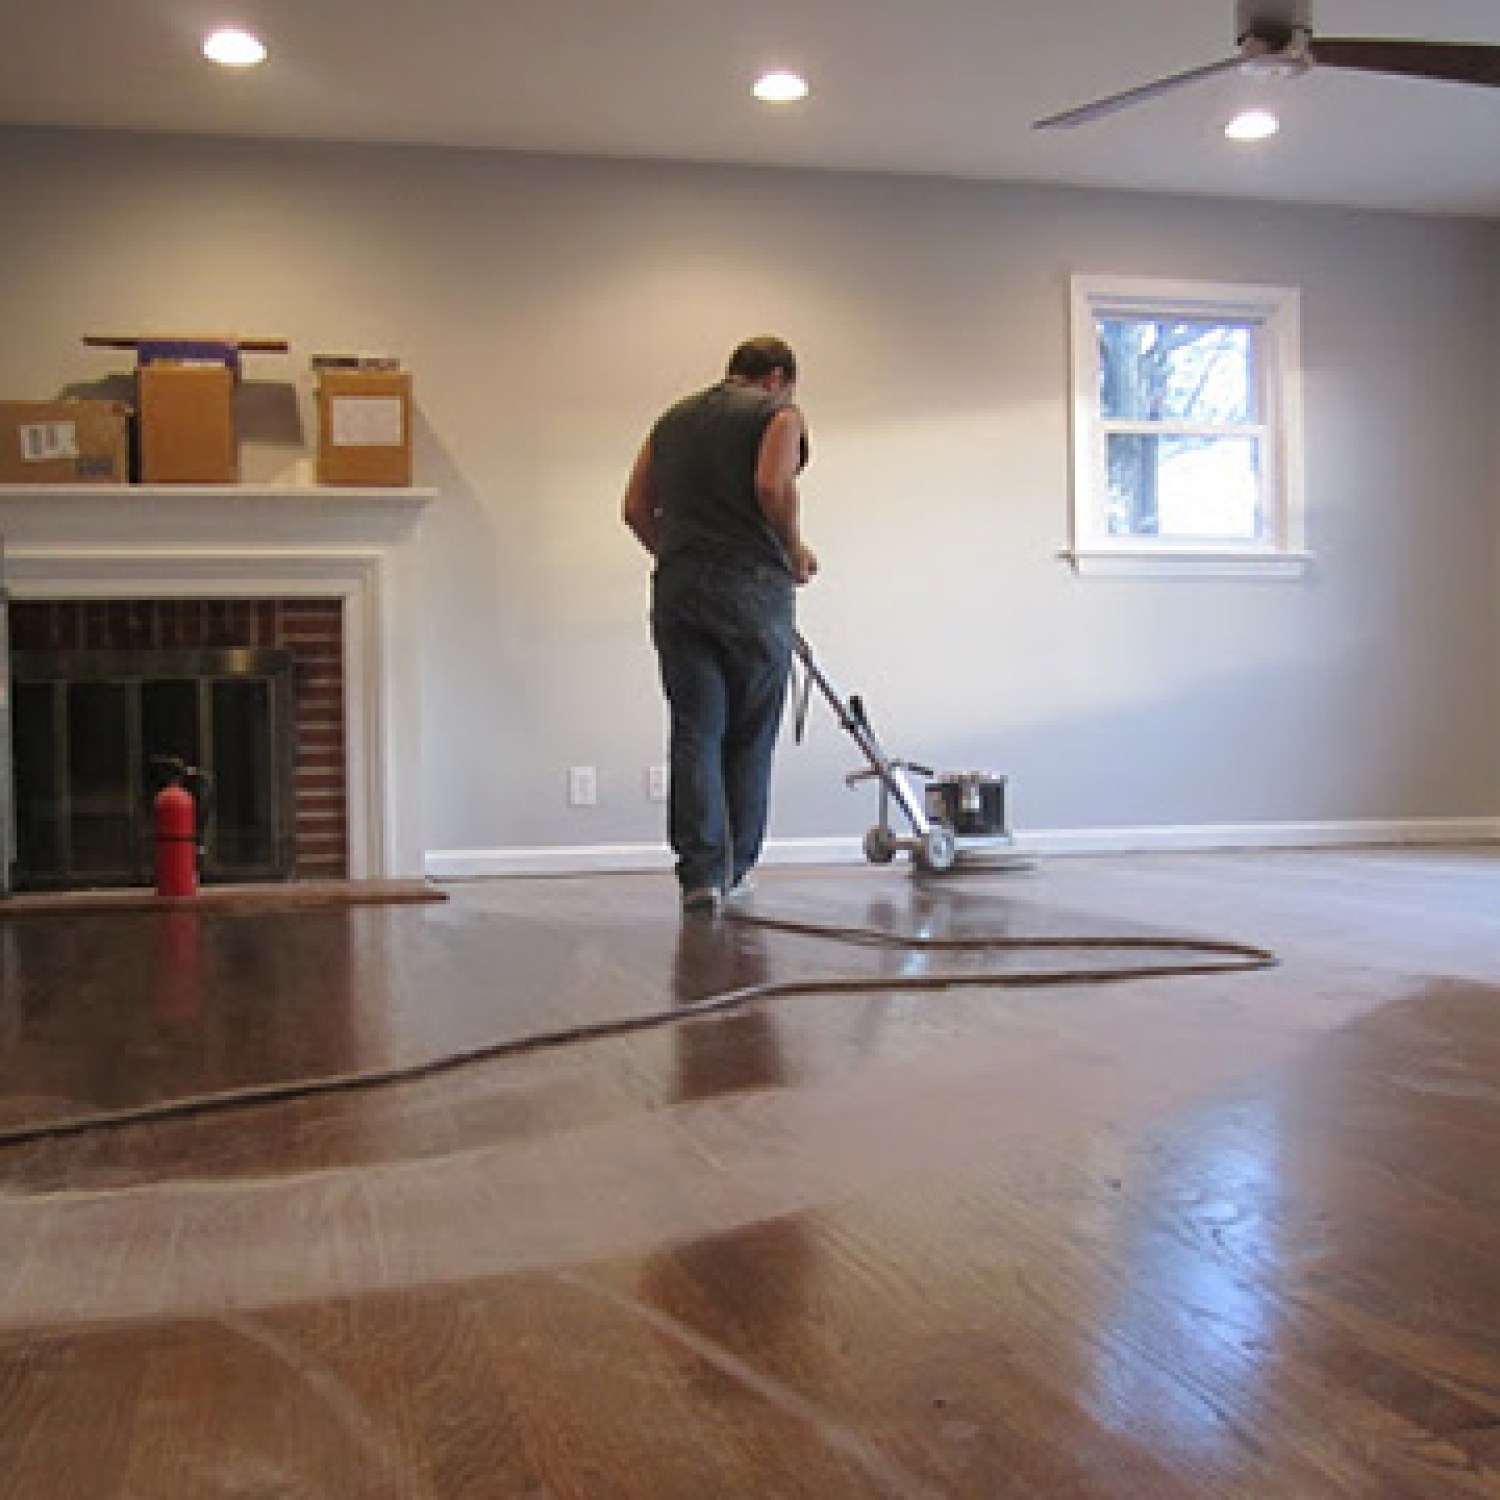 Refinishing Hardwood Floors Diy Wood, Average Cost To Sand And Refinish Hardwood Floors